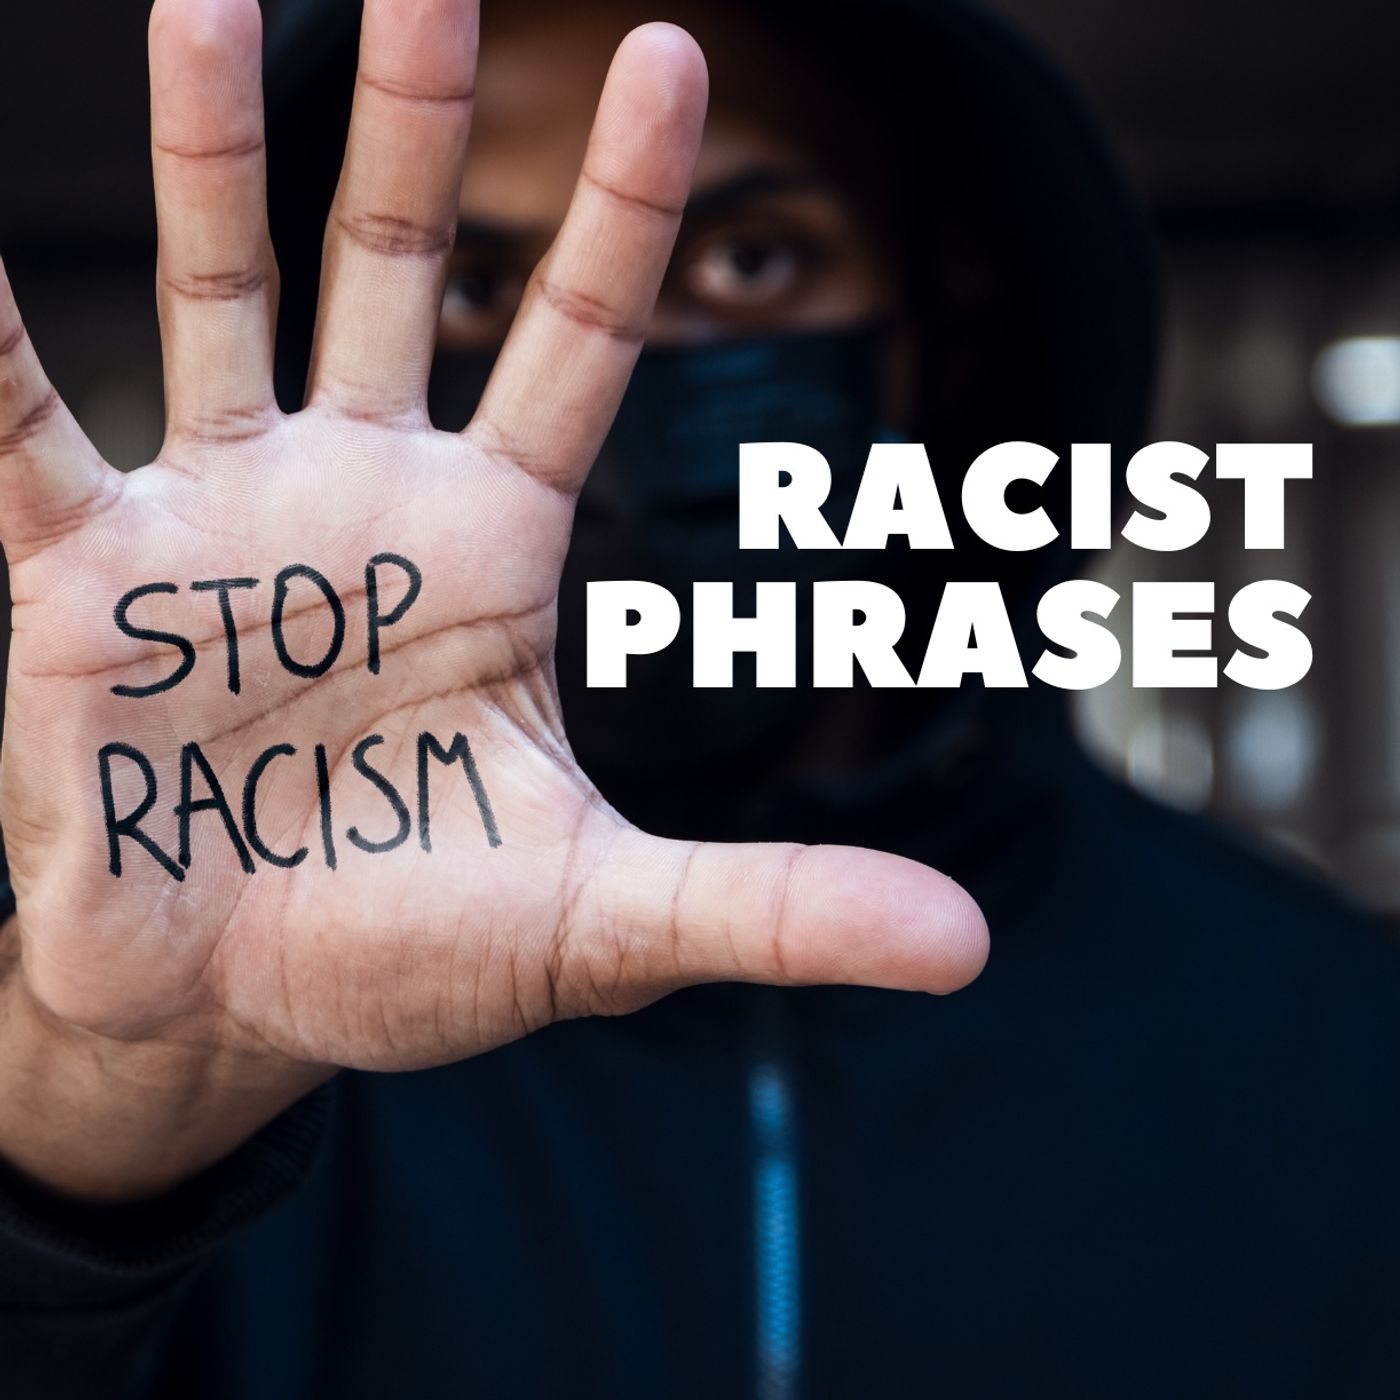 Racist Phrases